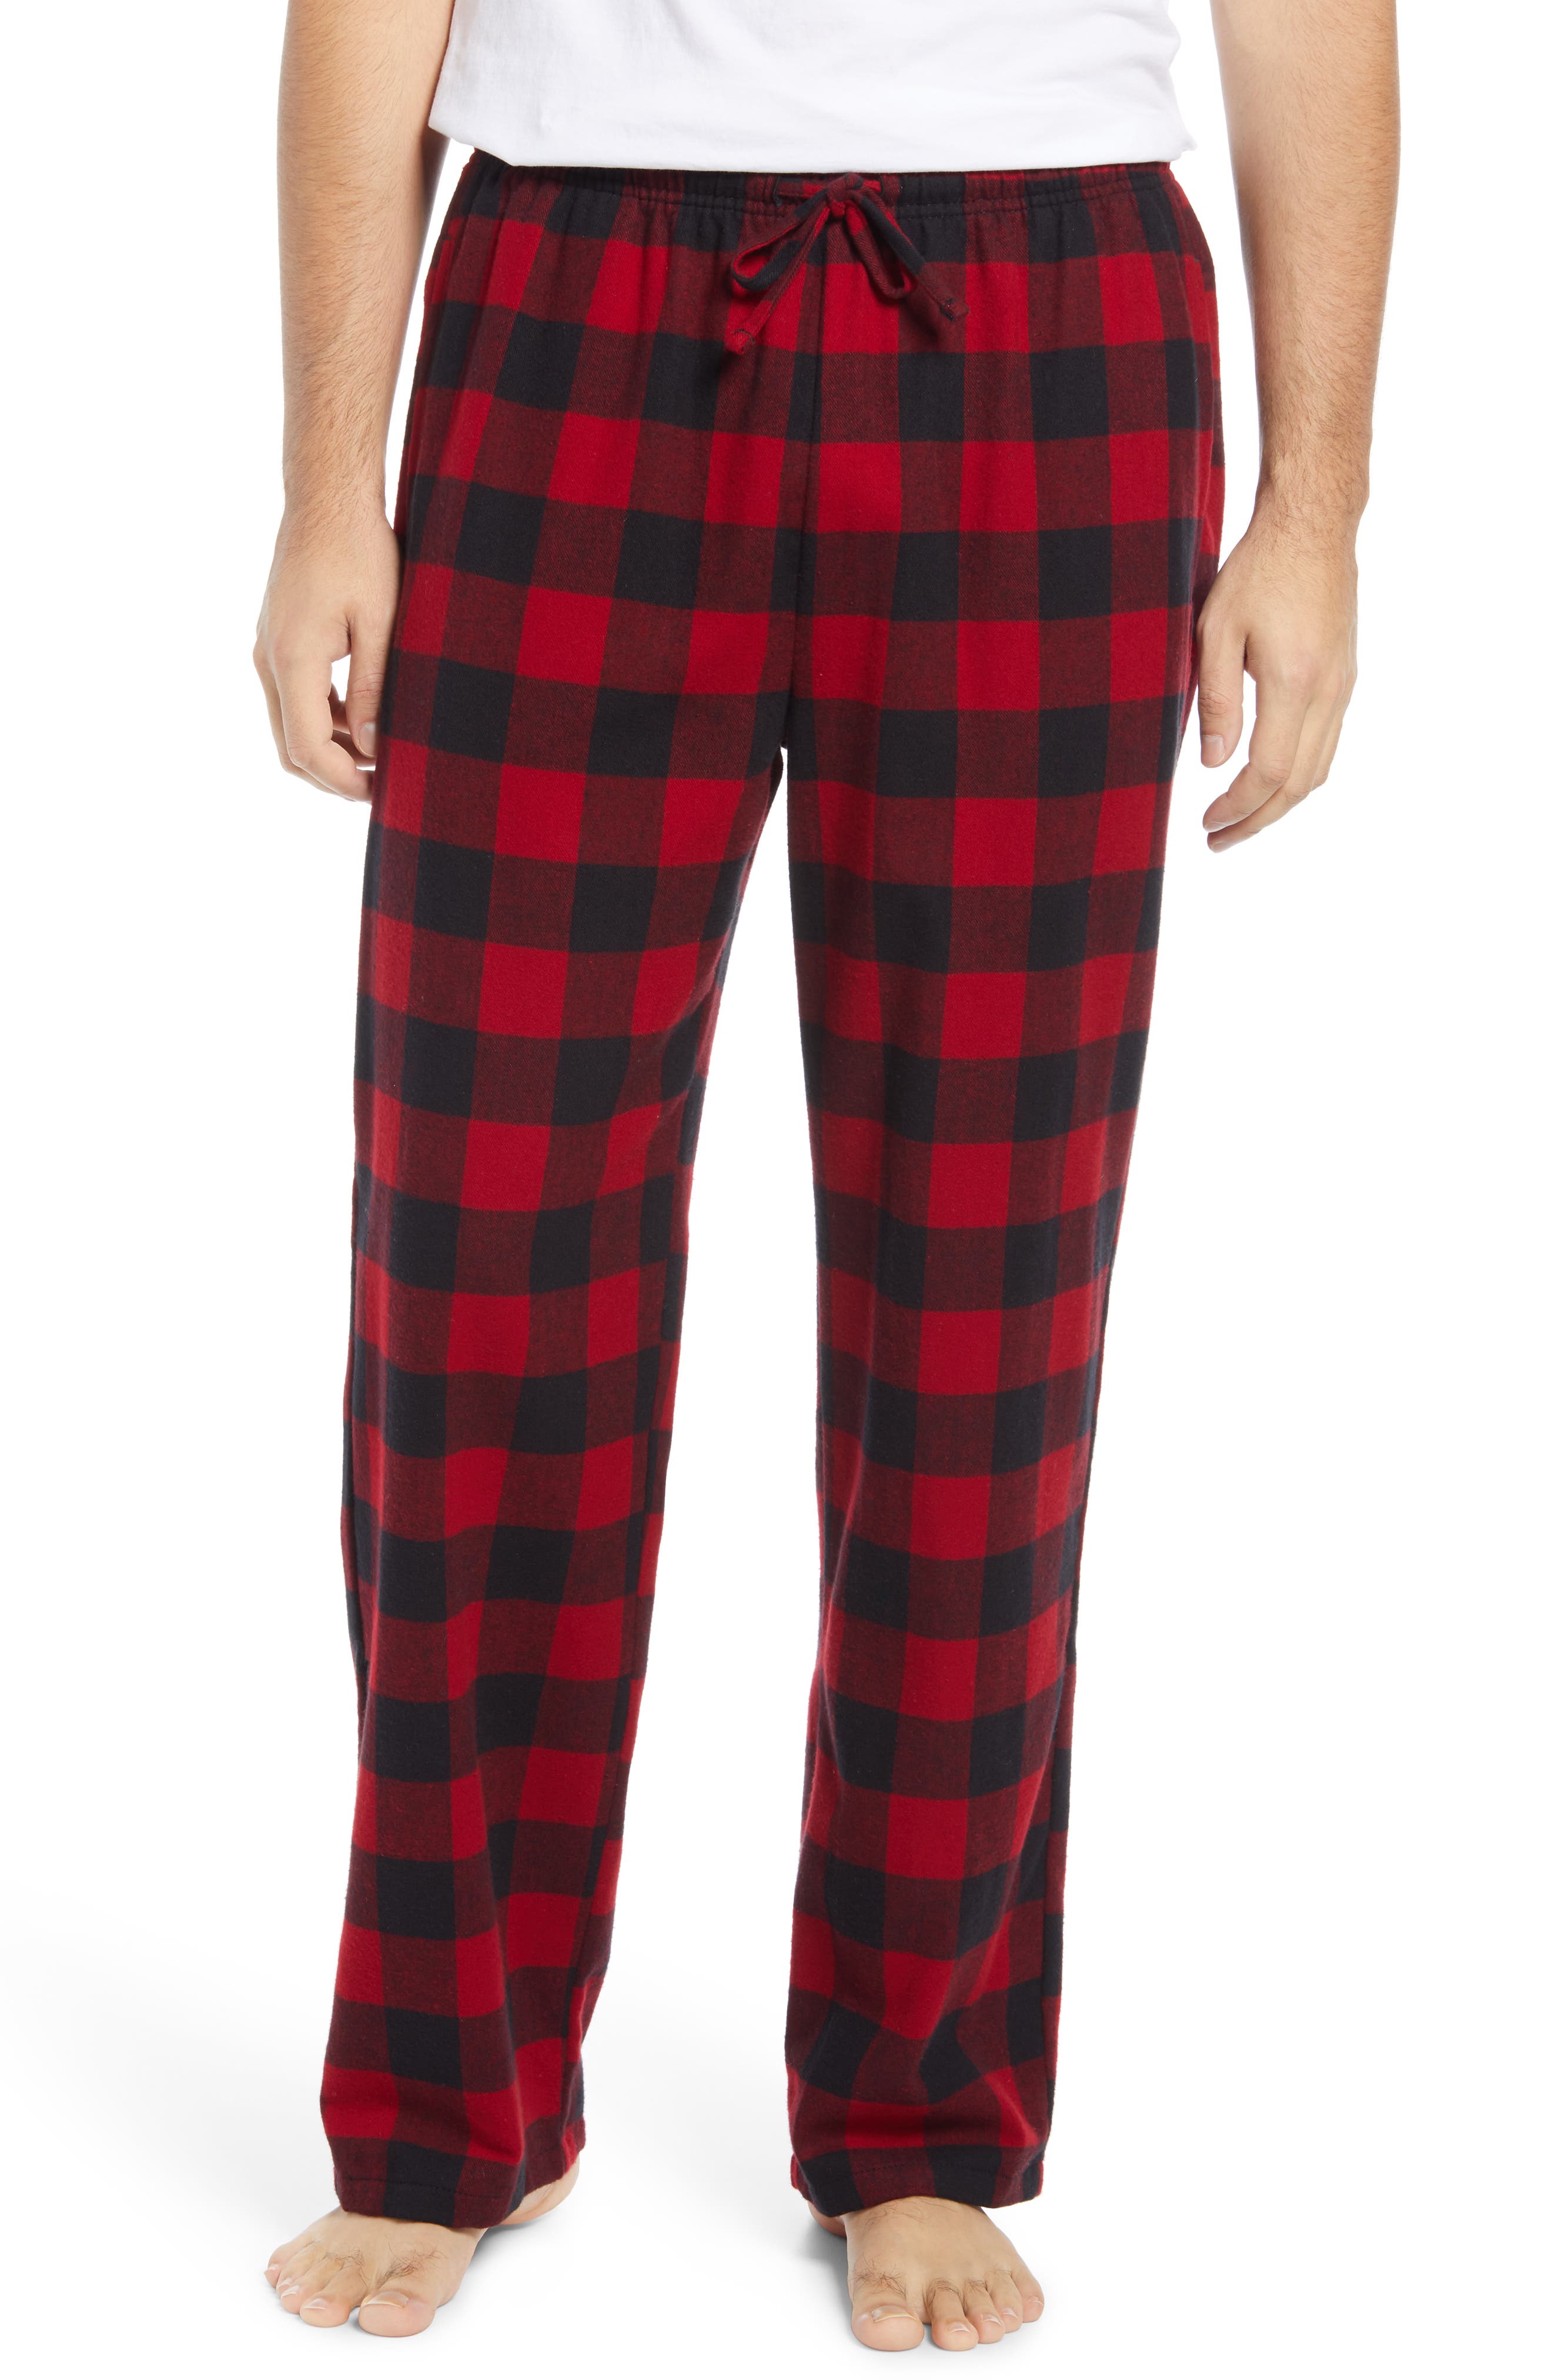 YIRUIYA Mens Pajamas Bottom Sleepwear Short Pajamas Cotton Pants Lounge Pant Pack 